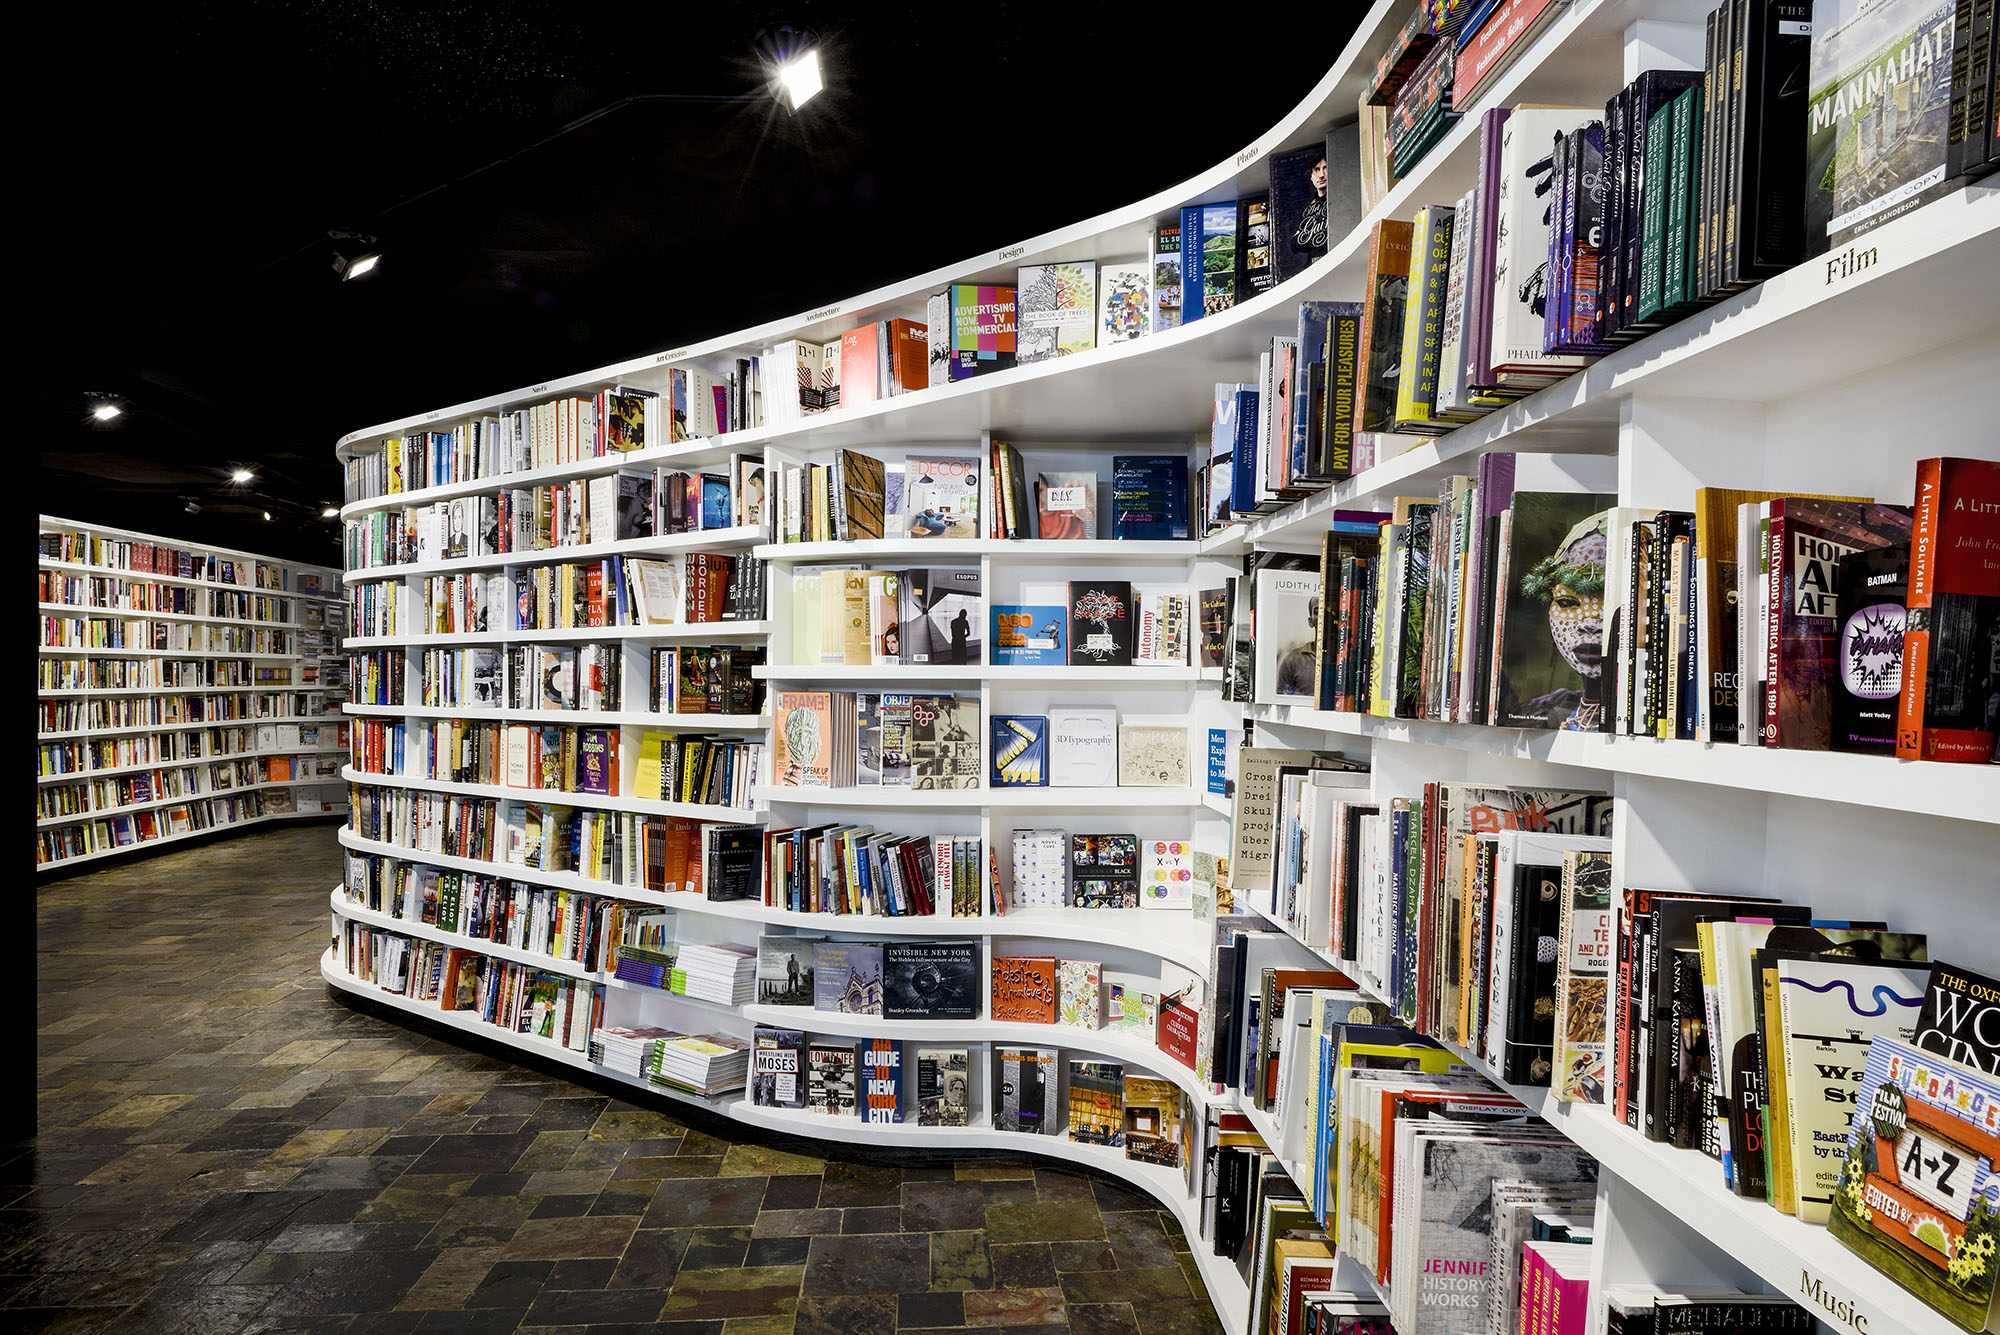 Find books like. Книжный магазин. Книжные полки в магазине. Полки в кн жном магазине. Стеллажи для книжного магазина.